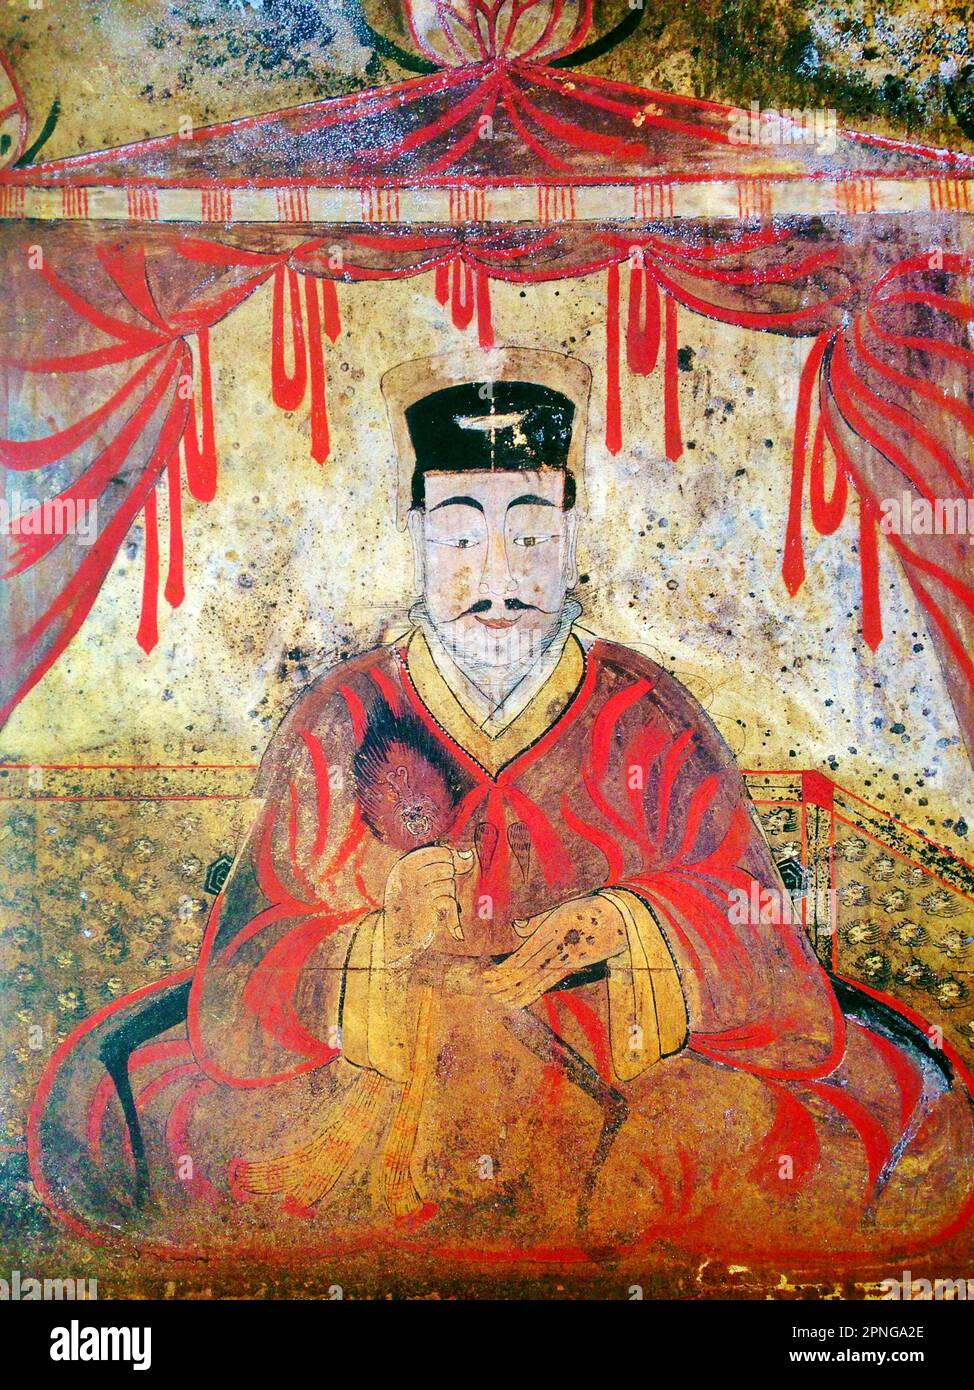 Korea: Grabporträt von König Micheon oder König Gogugwon oder Minister Dong Shou, Koguryo, Anak Tomb 3, c. 371 CE. Goguryeo oder Koguryŏ war ein antikes koreanisches Königreich, das sich heute in nördlichen und zentralen Teilen der koreanischen Halbinsel, der Südmandschurei und der südlichen russischen Küstenprovinz befindet. Zusammen mit Baekje und Silla war Goguryeo eines der drei Königreiche Koreas. Goguryeo war ein aktiver Teilnehmer am Machtkampf um die Kontrolle über die koreanische Halbinsel sowie mit den Außenbeziehungen der Nachbarpolitiken in China und Japan verbunden. Stockfoto